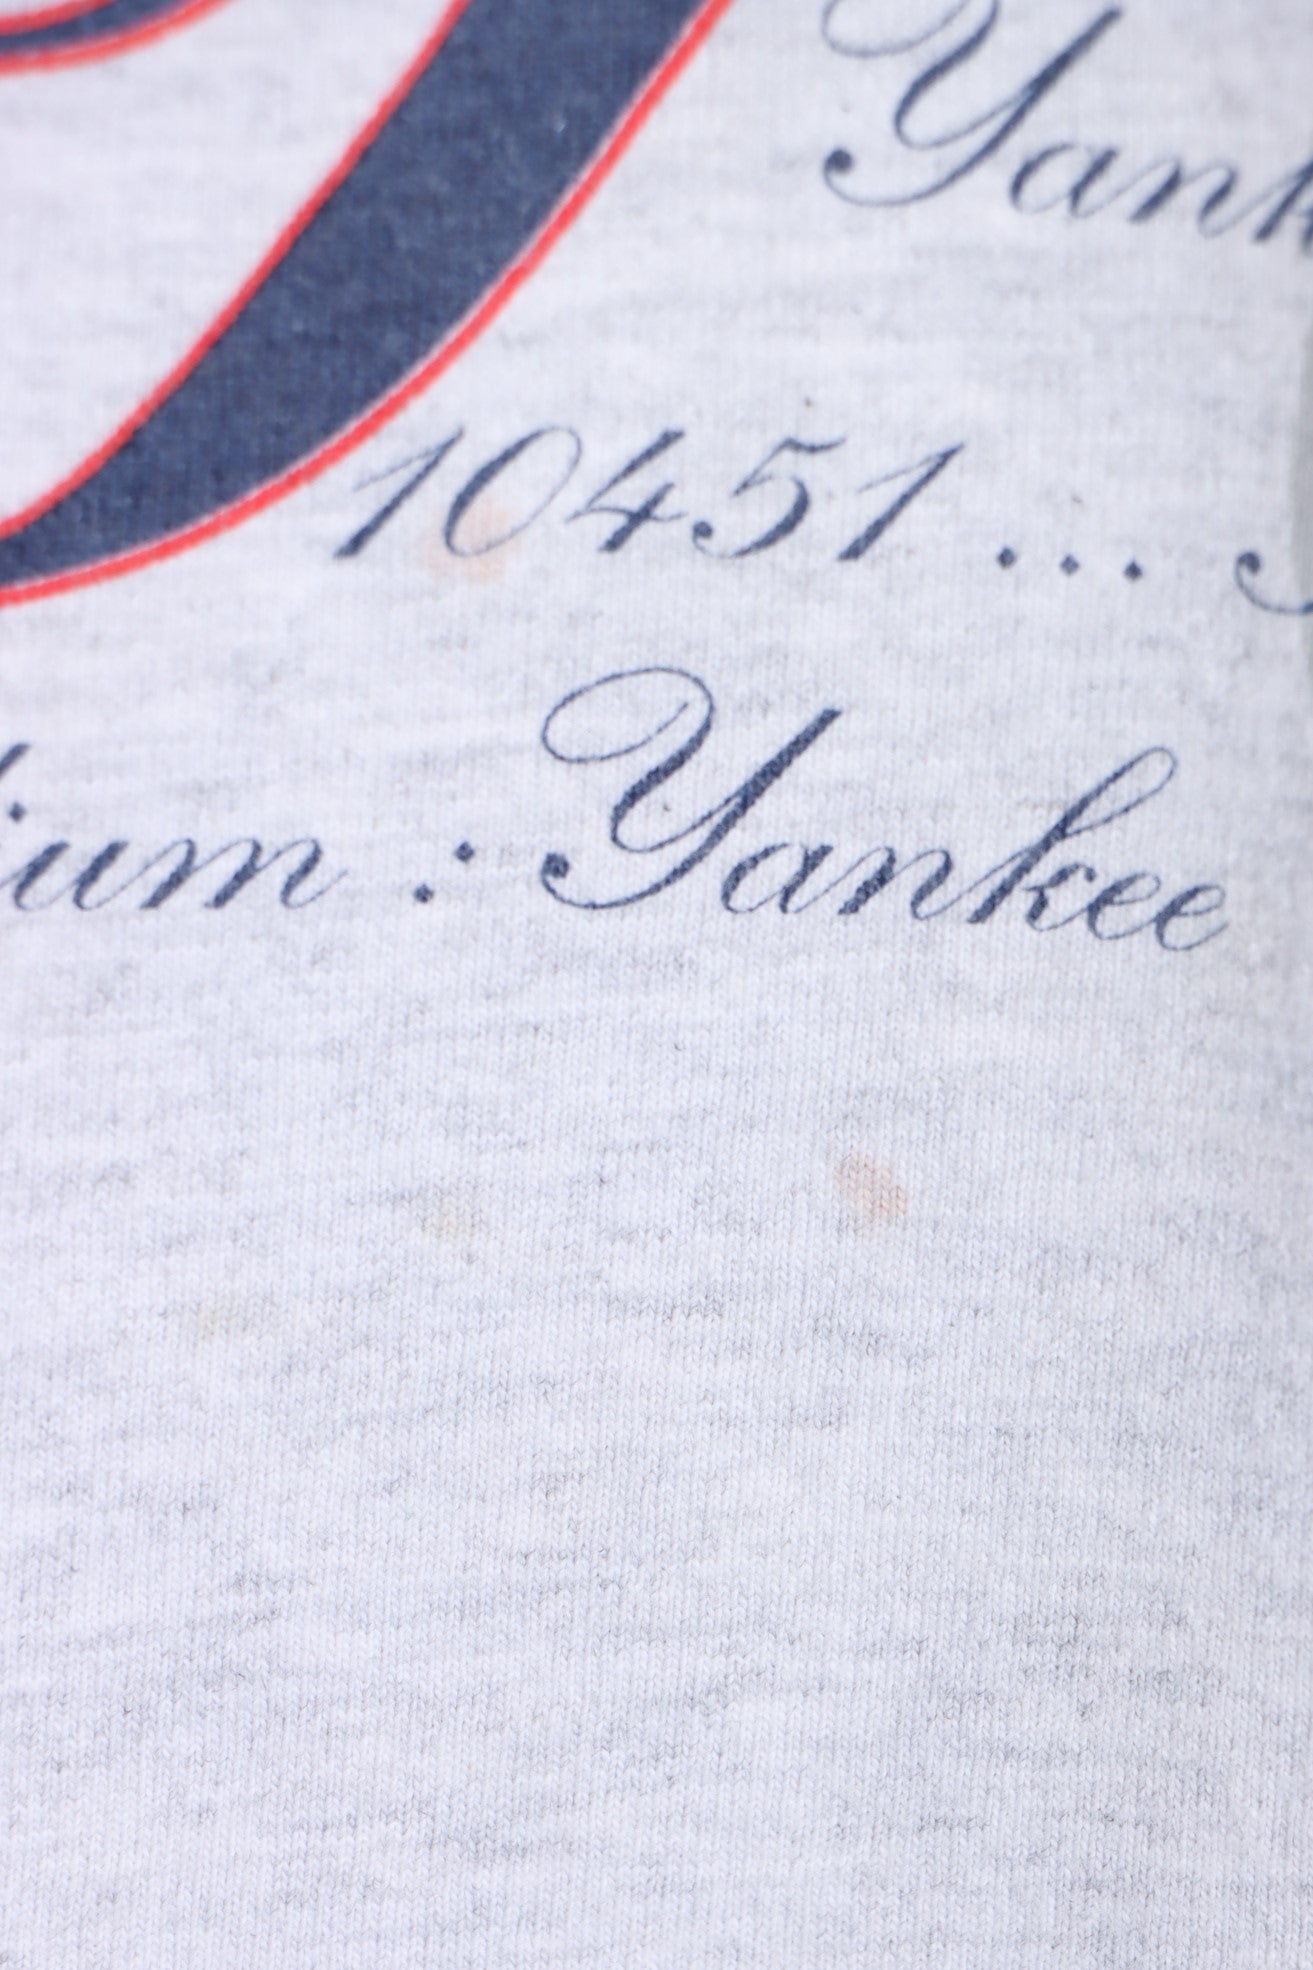 Nutmeg New York Yankees MLB Shirts for sale